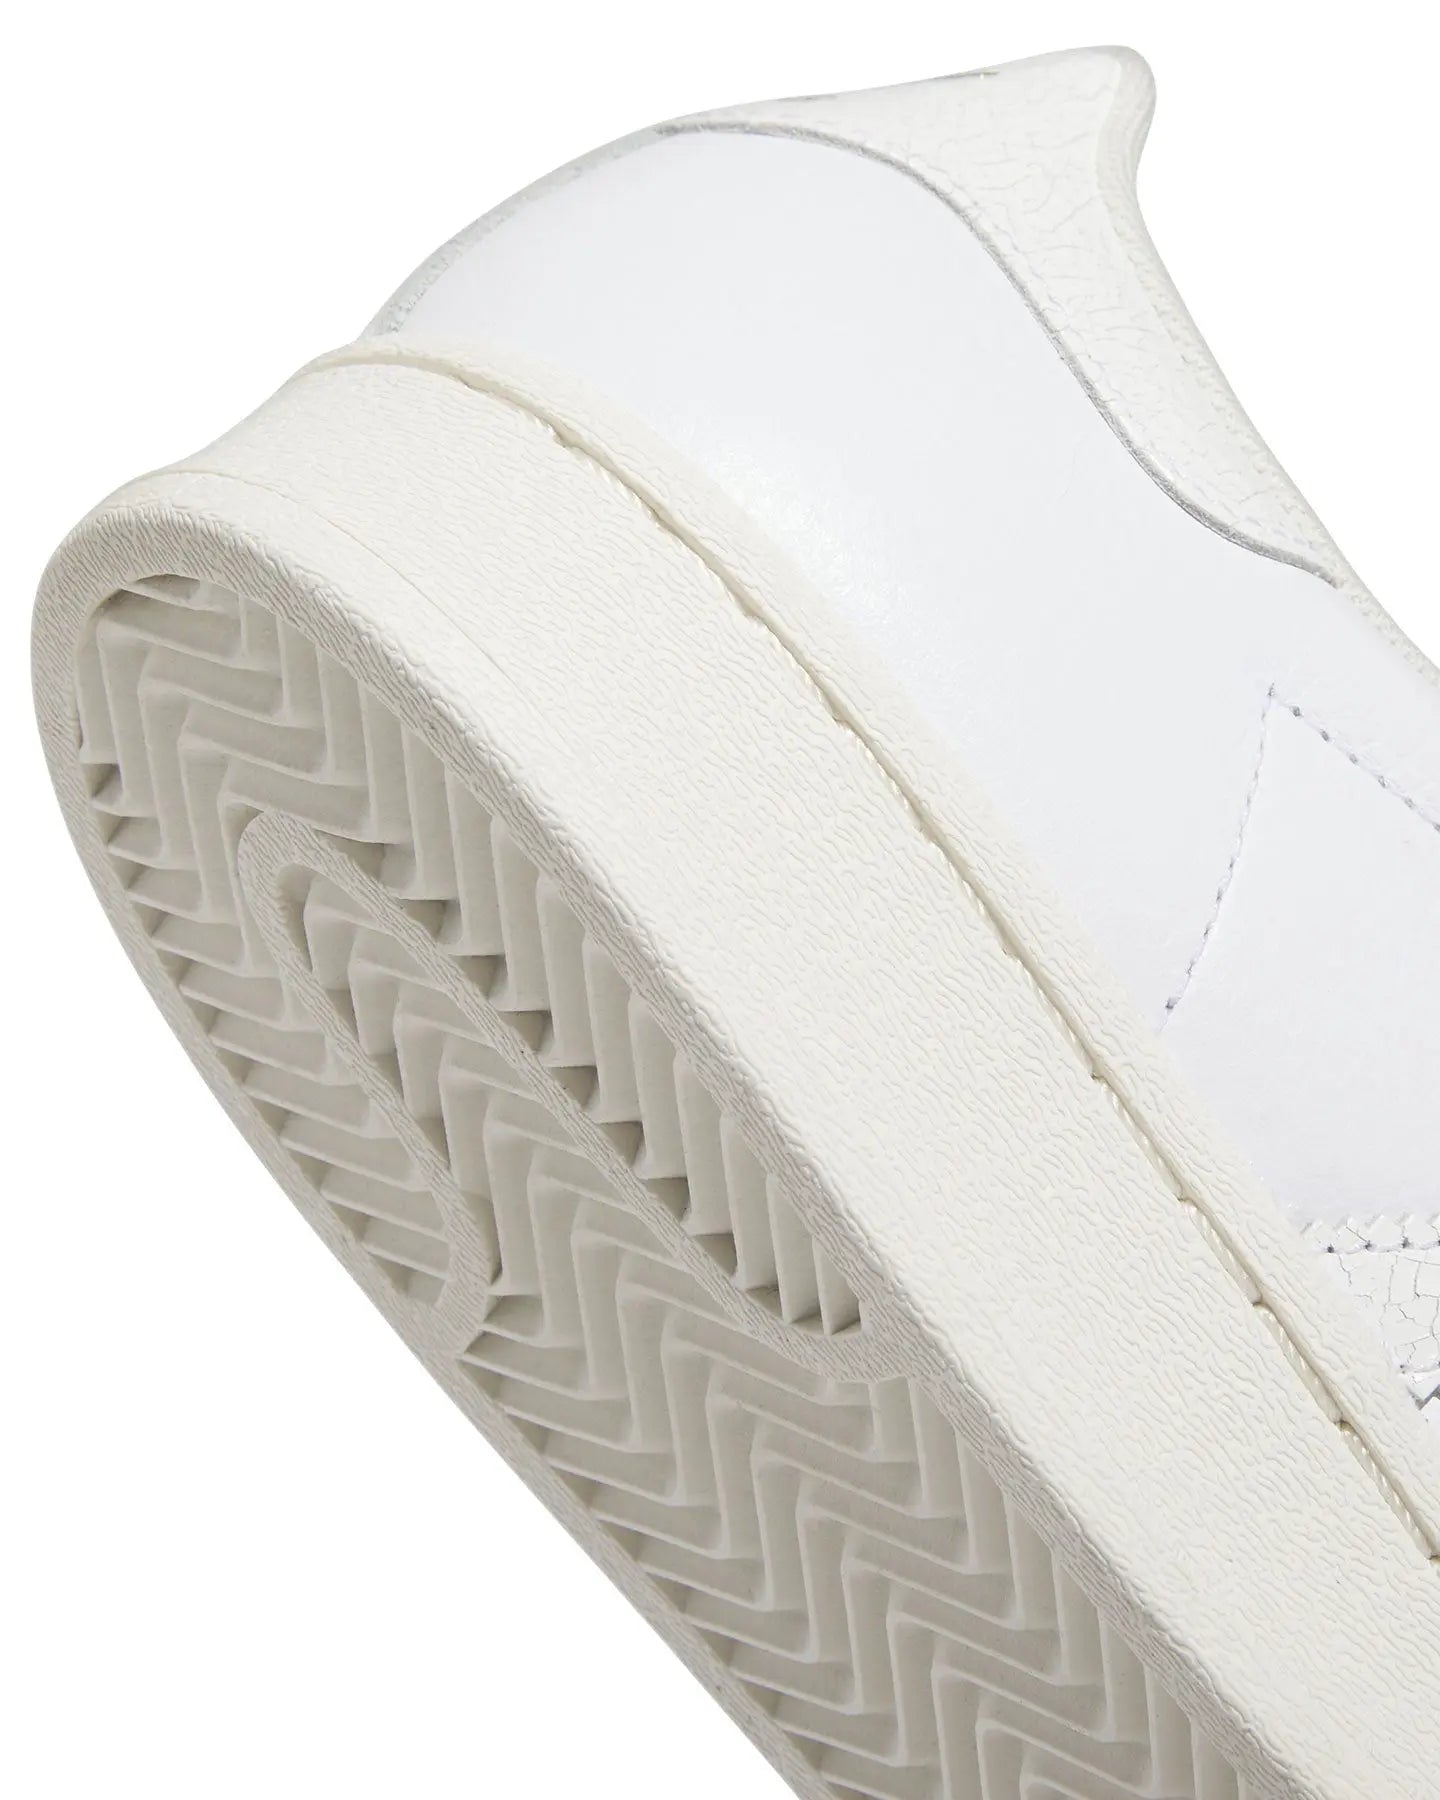 Adidas Superstar ADV - White / White / Chalk White Footwear